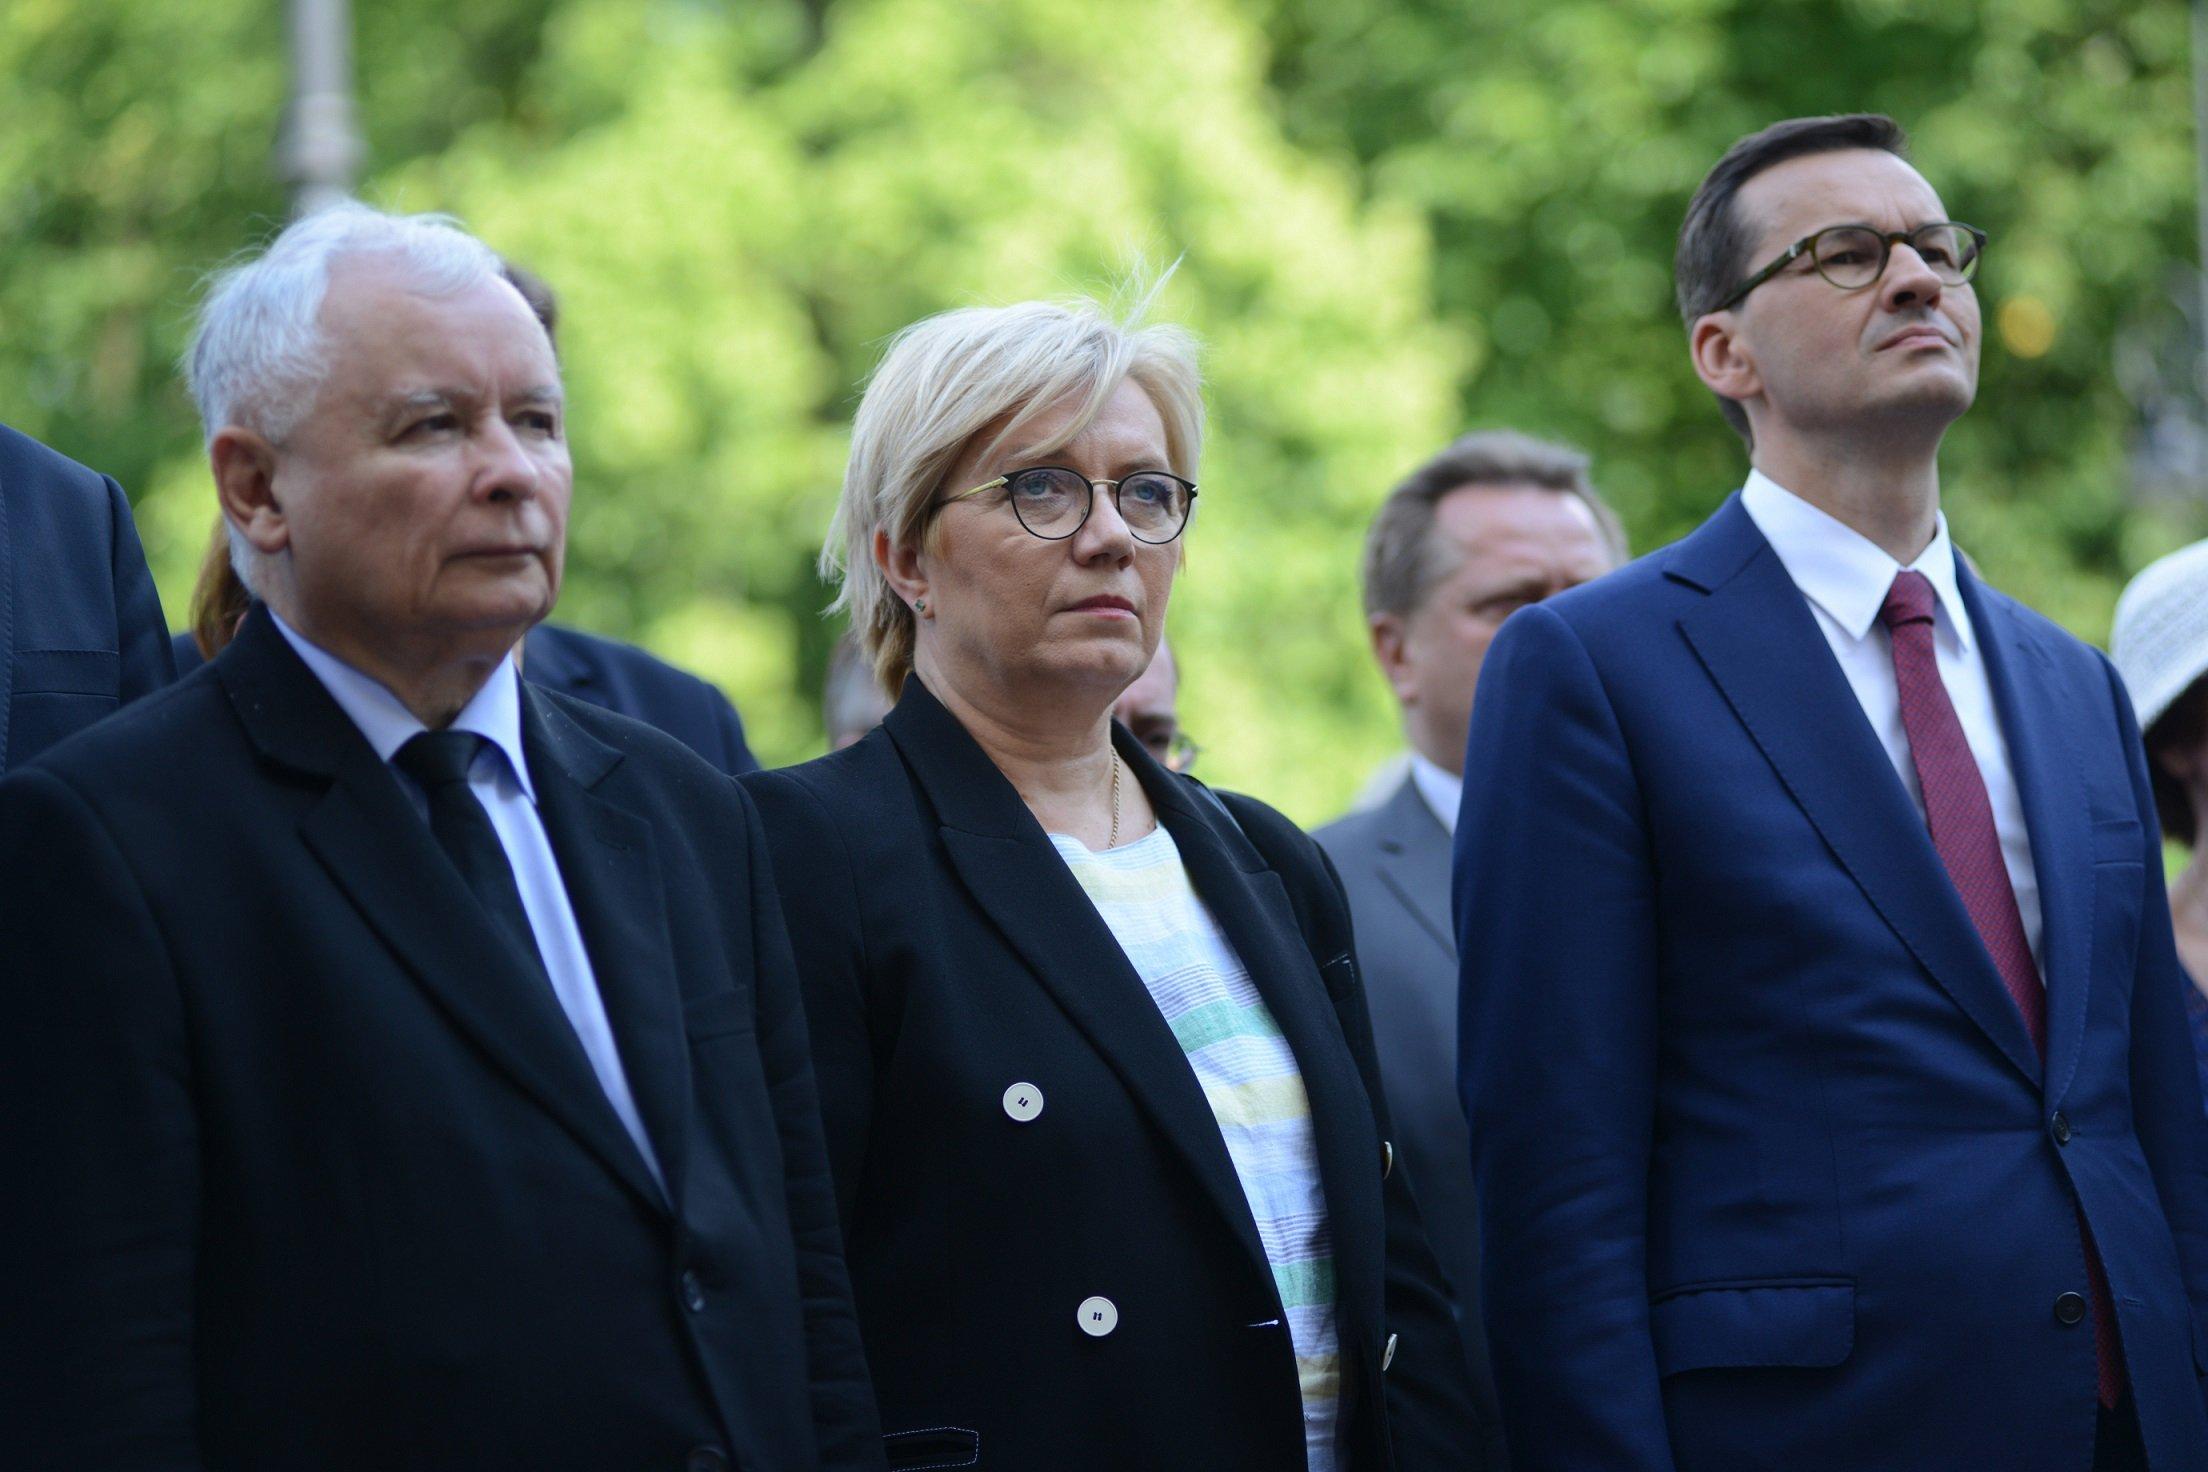 Jarosław Kaczyński, Julia Przyłębska i Mateusz Morawiecki